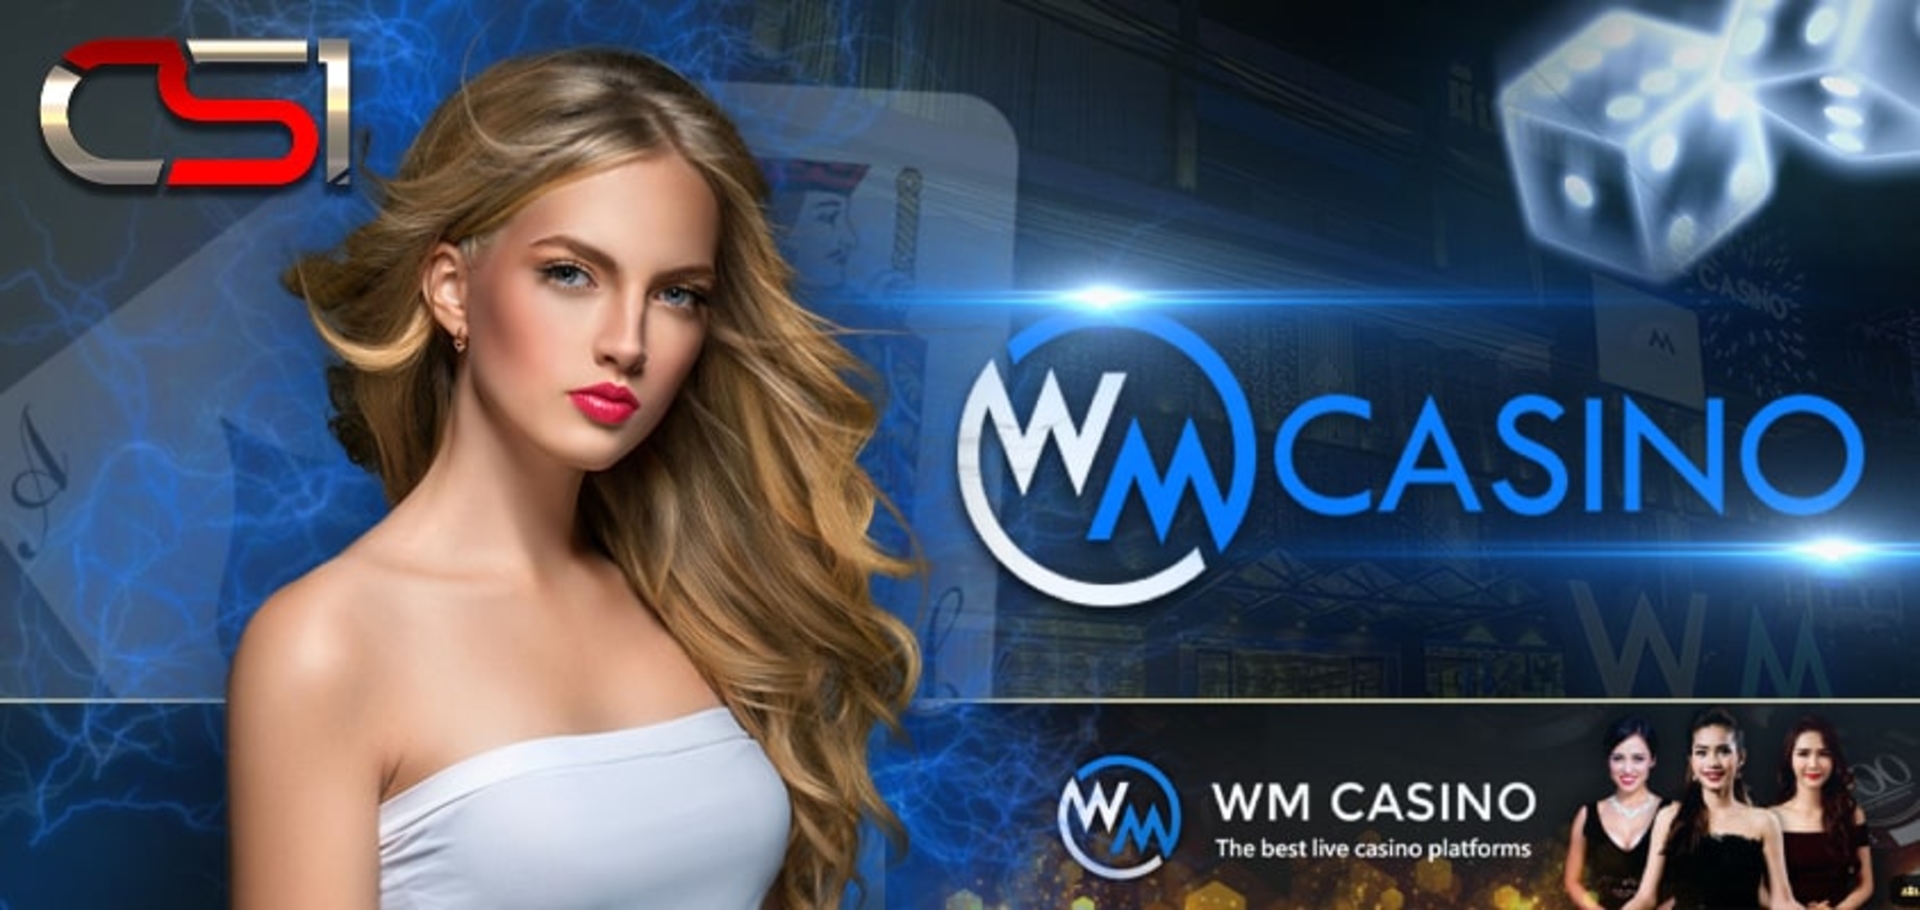 Casino WM Casino Banner